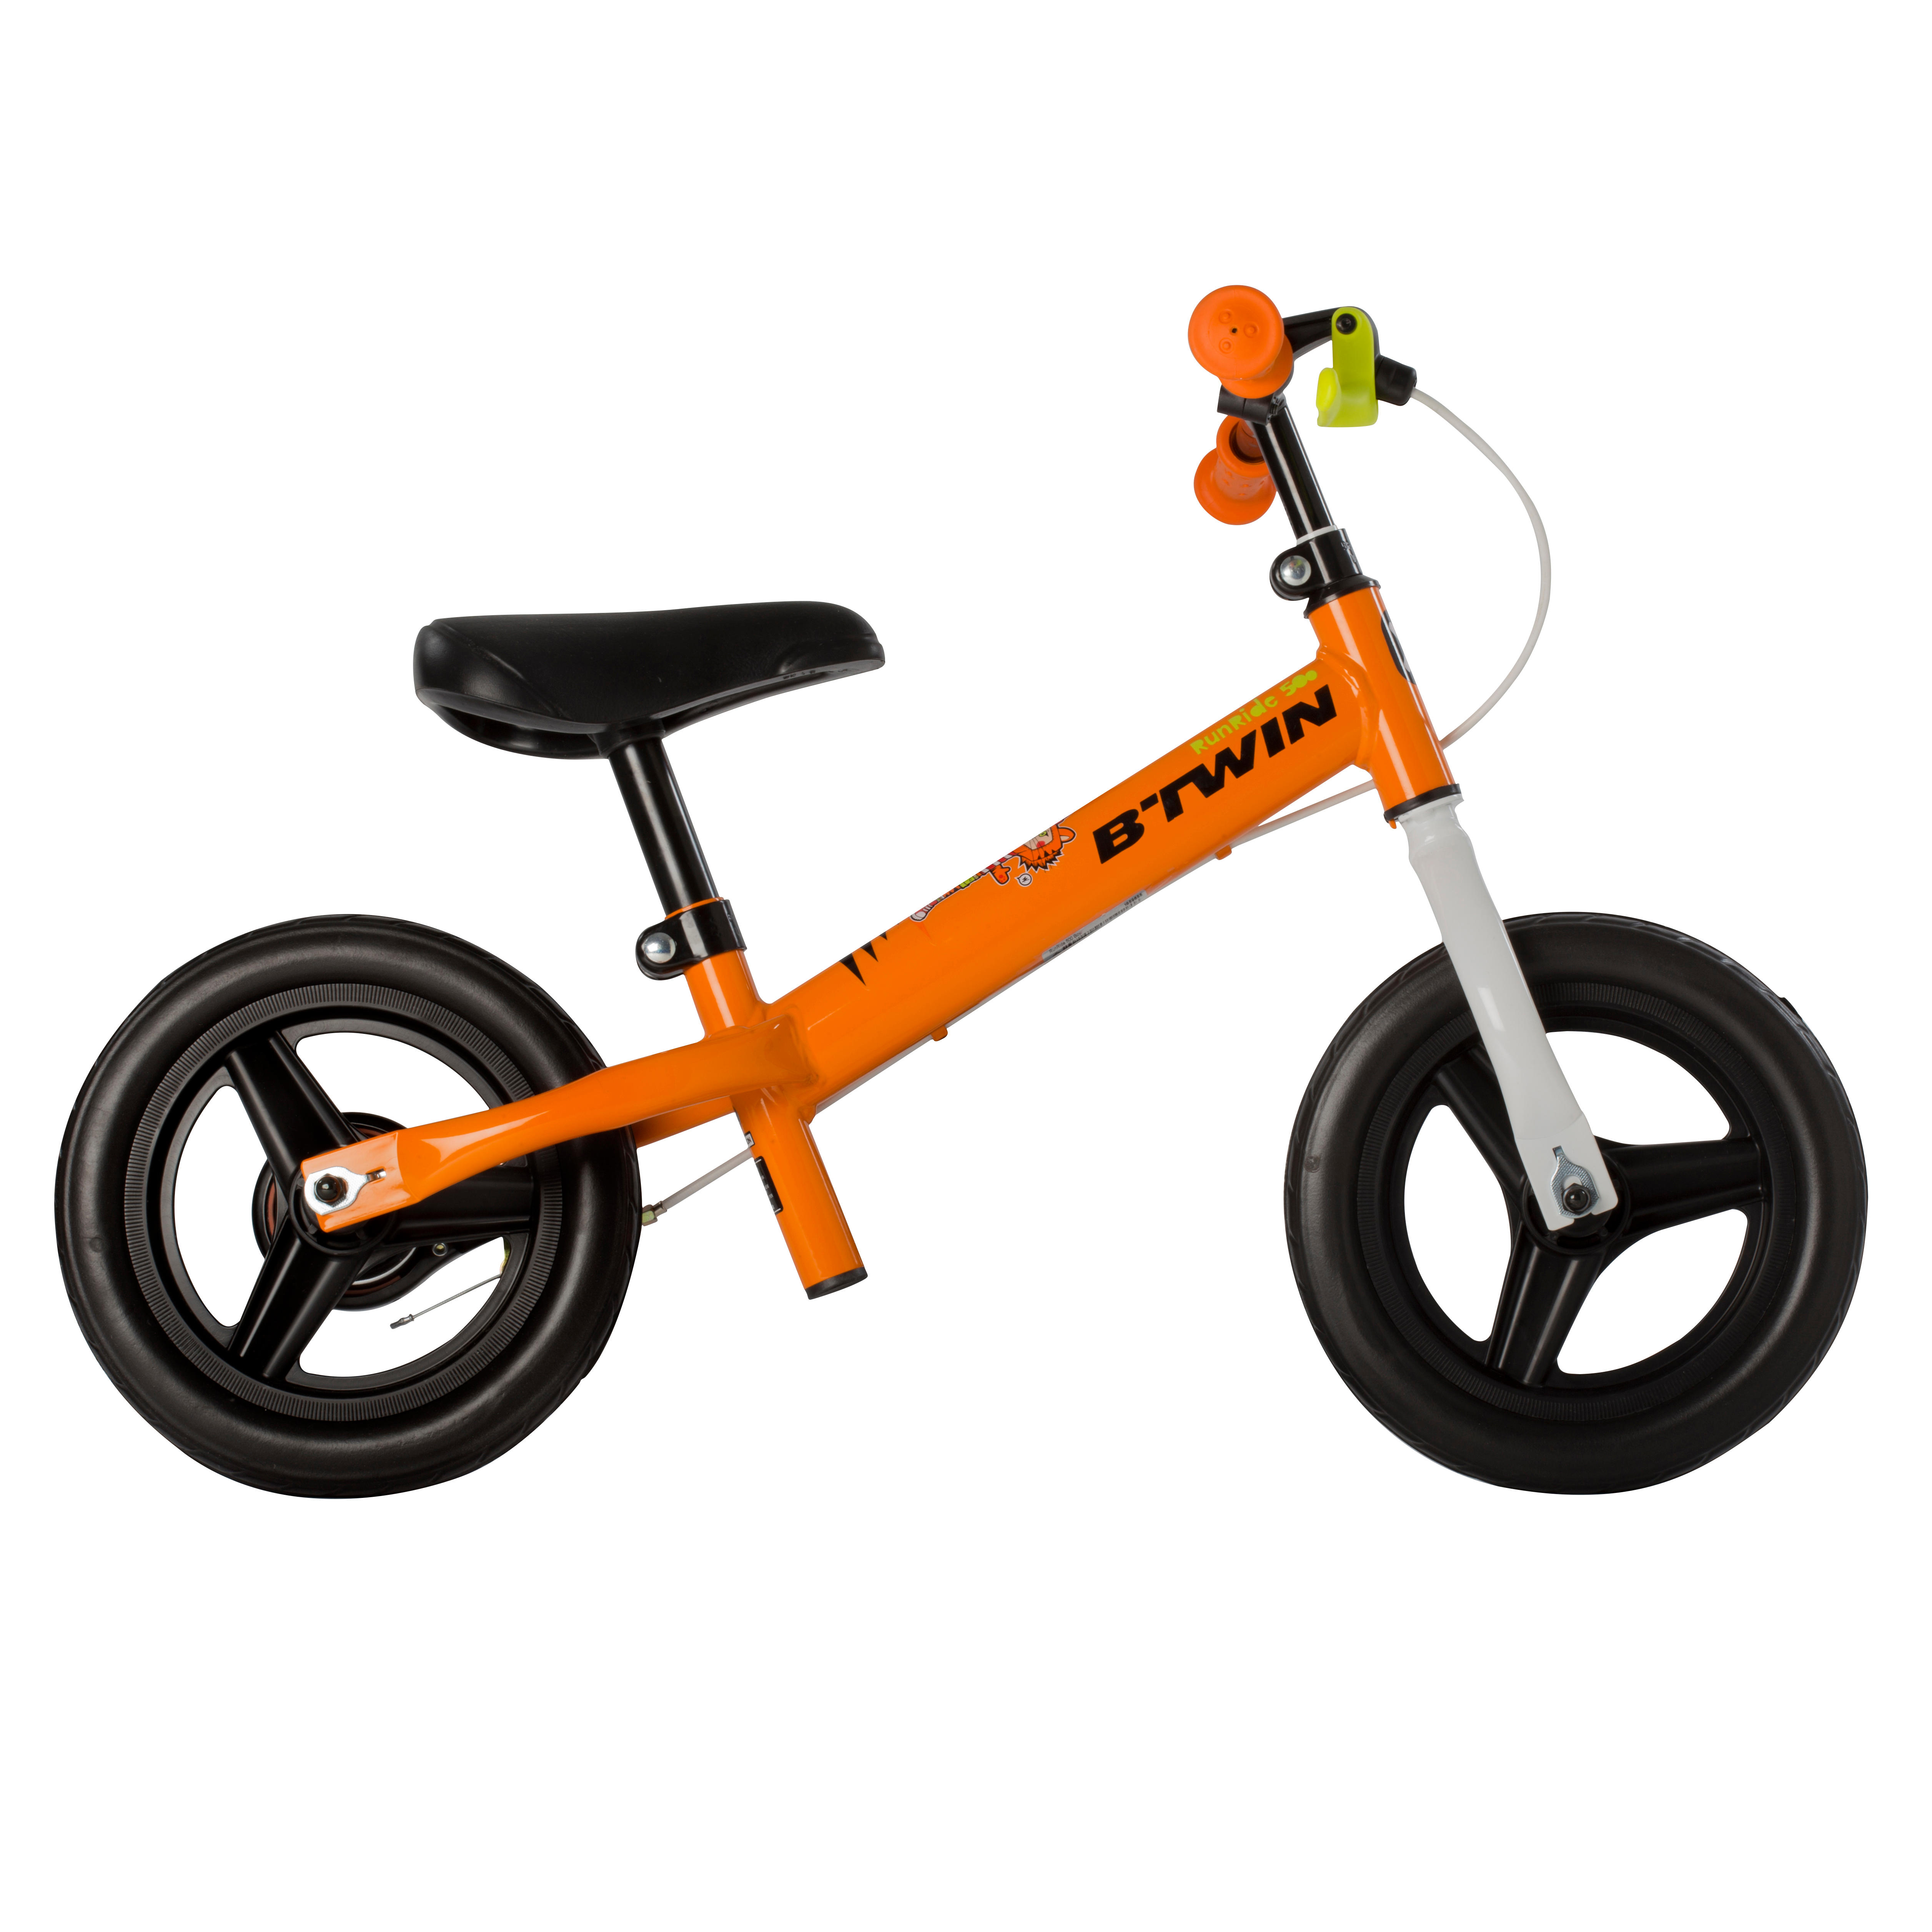 Runride 500 Balance Bike, Orange/Black 